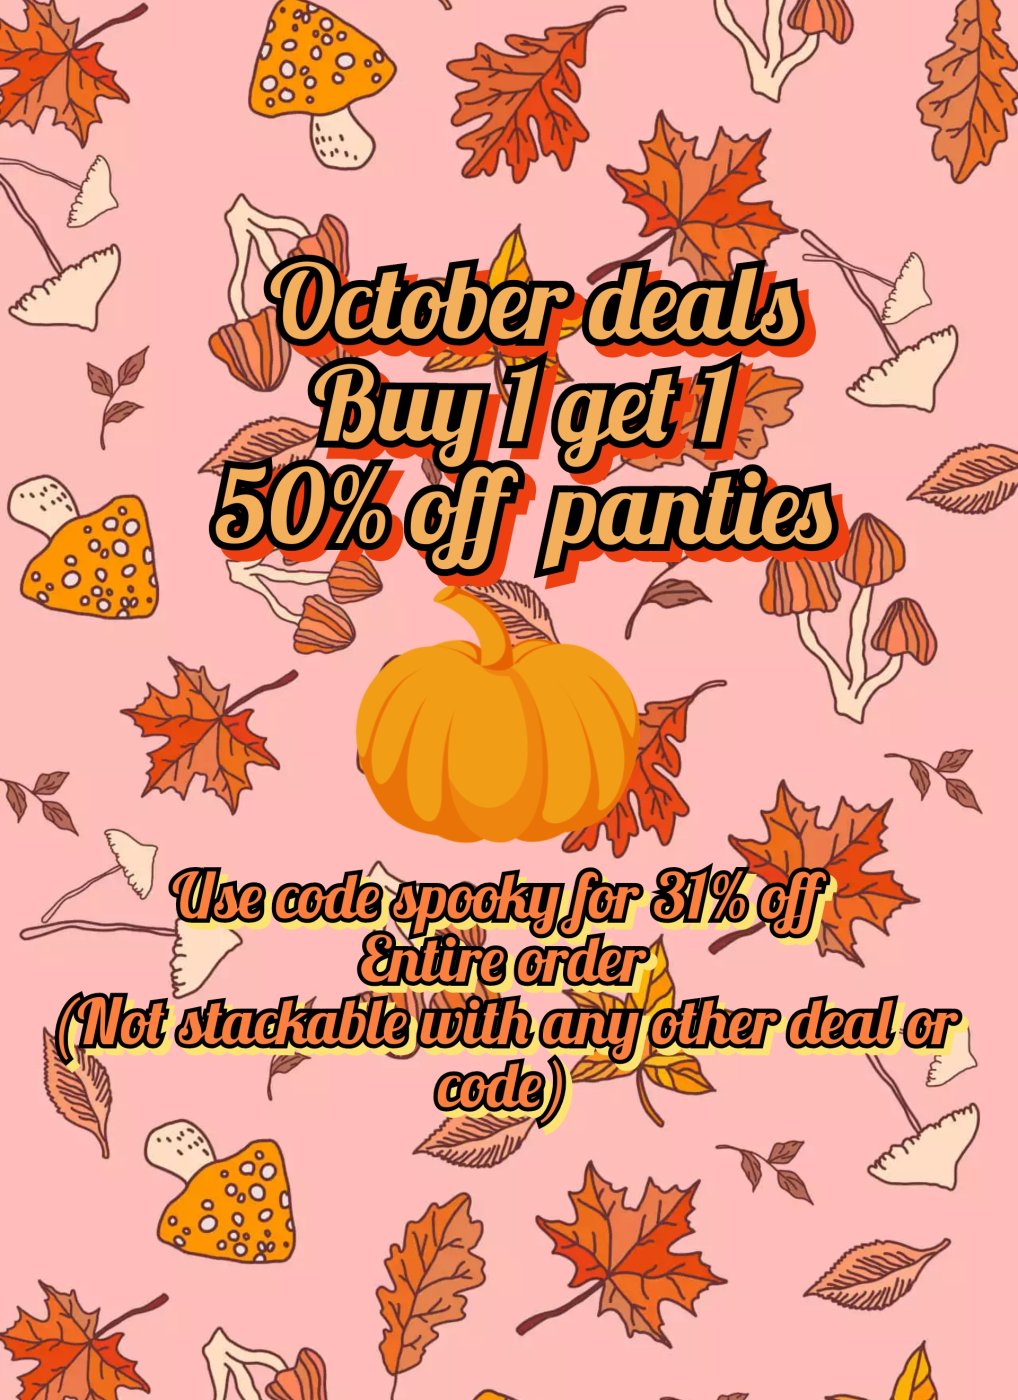 October deals